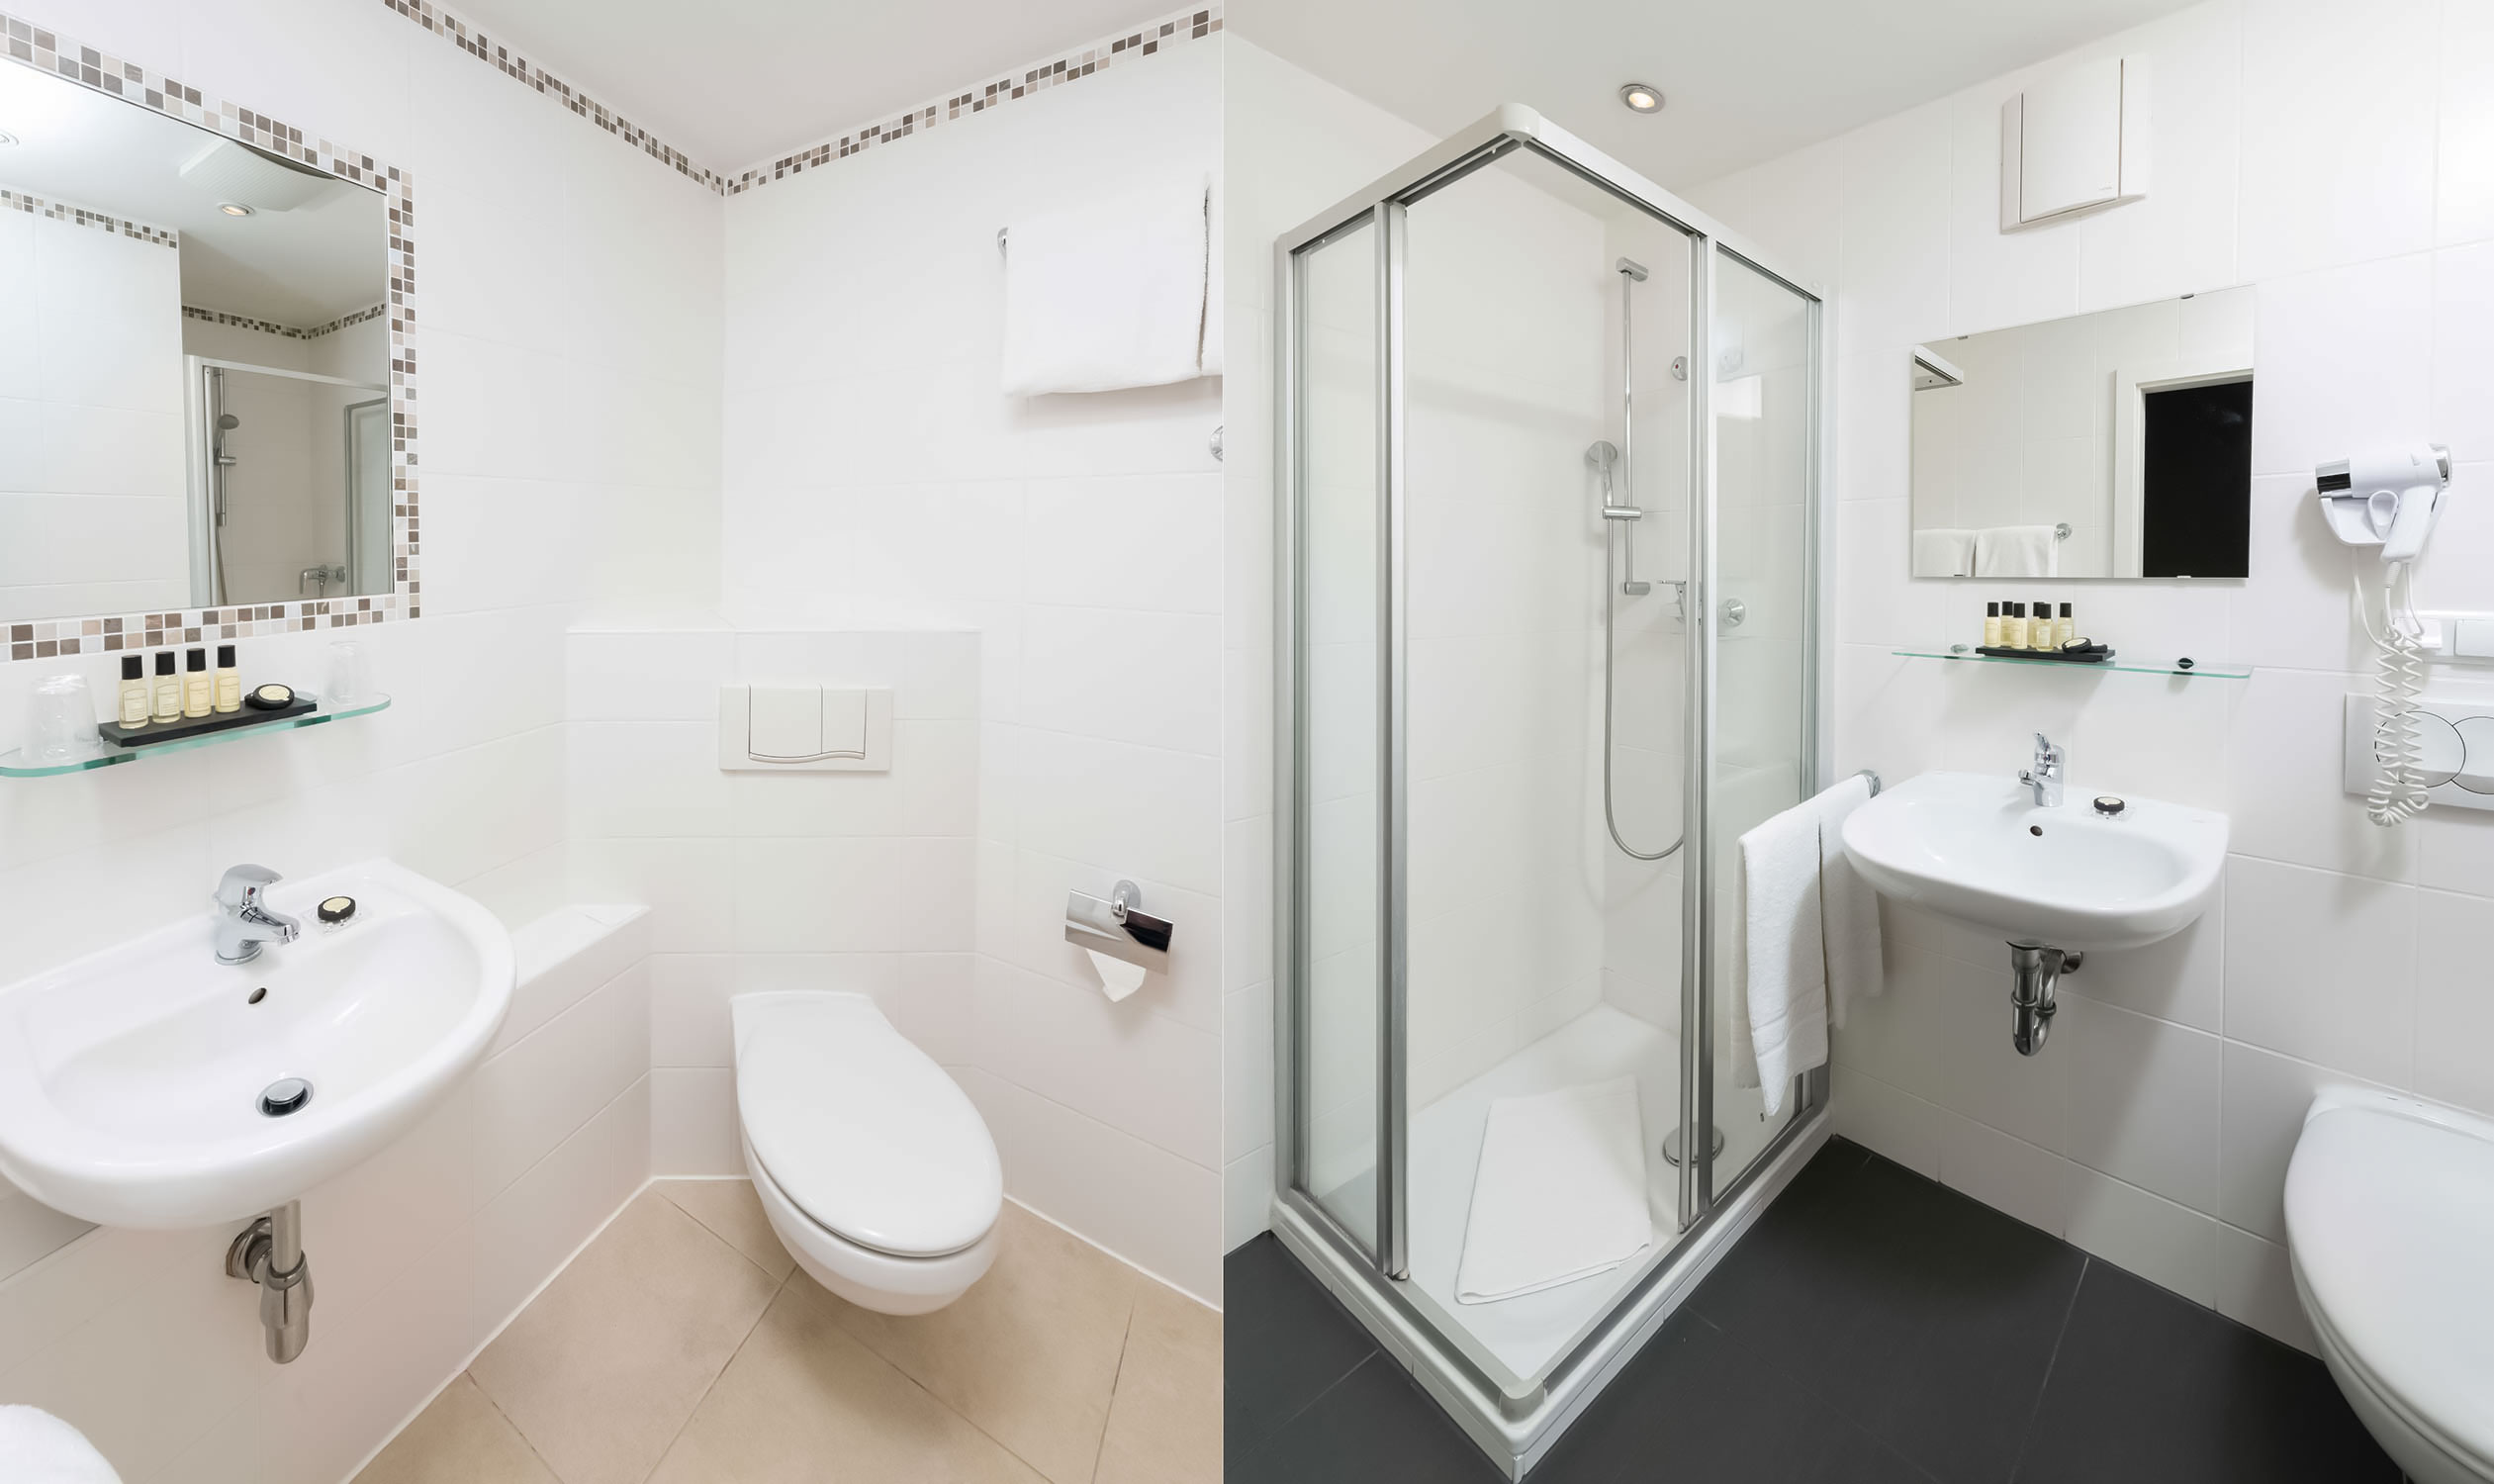 Munich Inn Design Hotel impressione di un bagno con il water